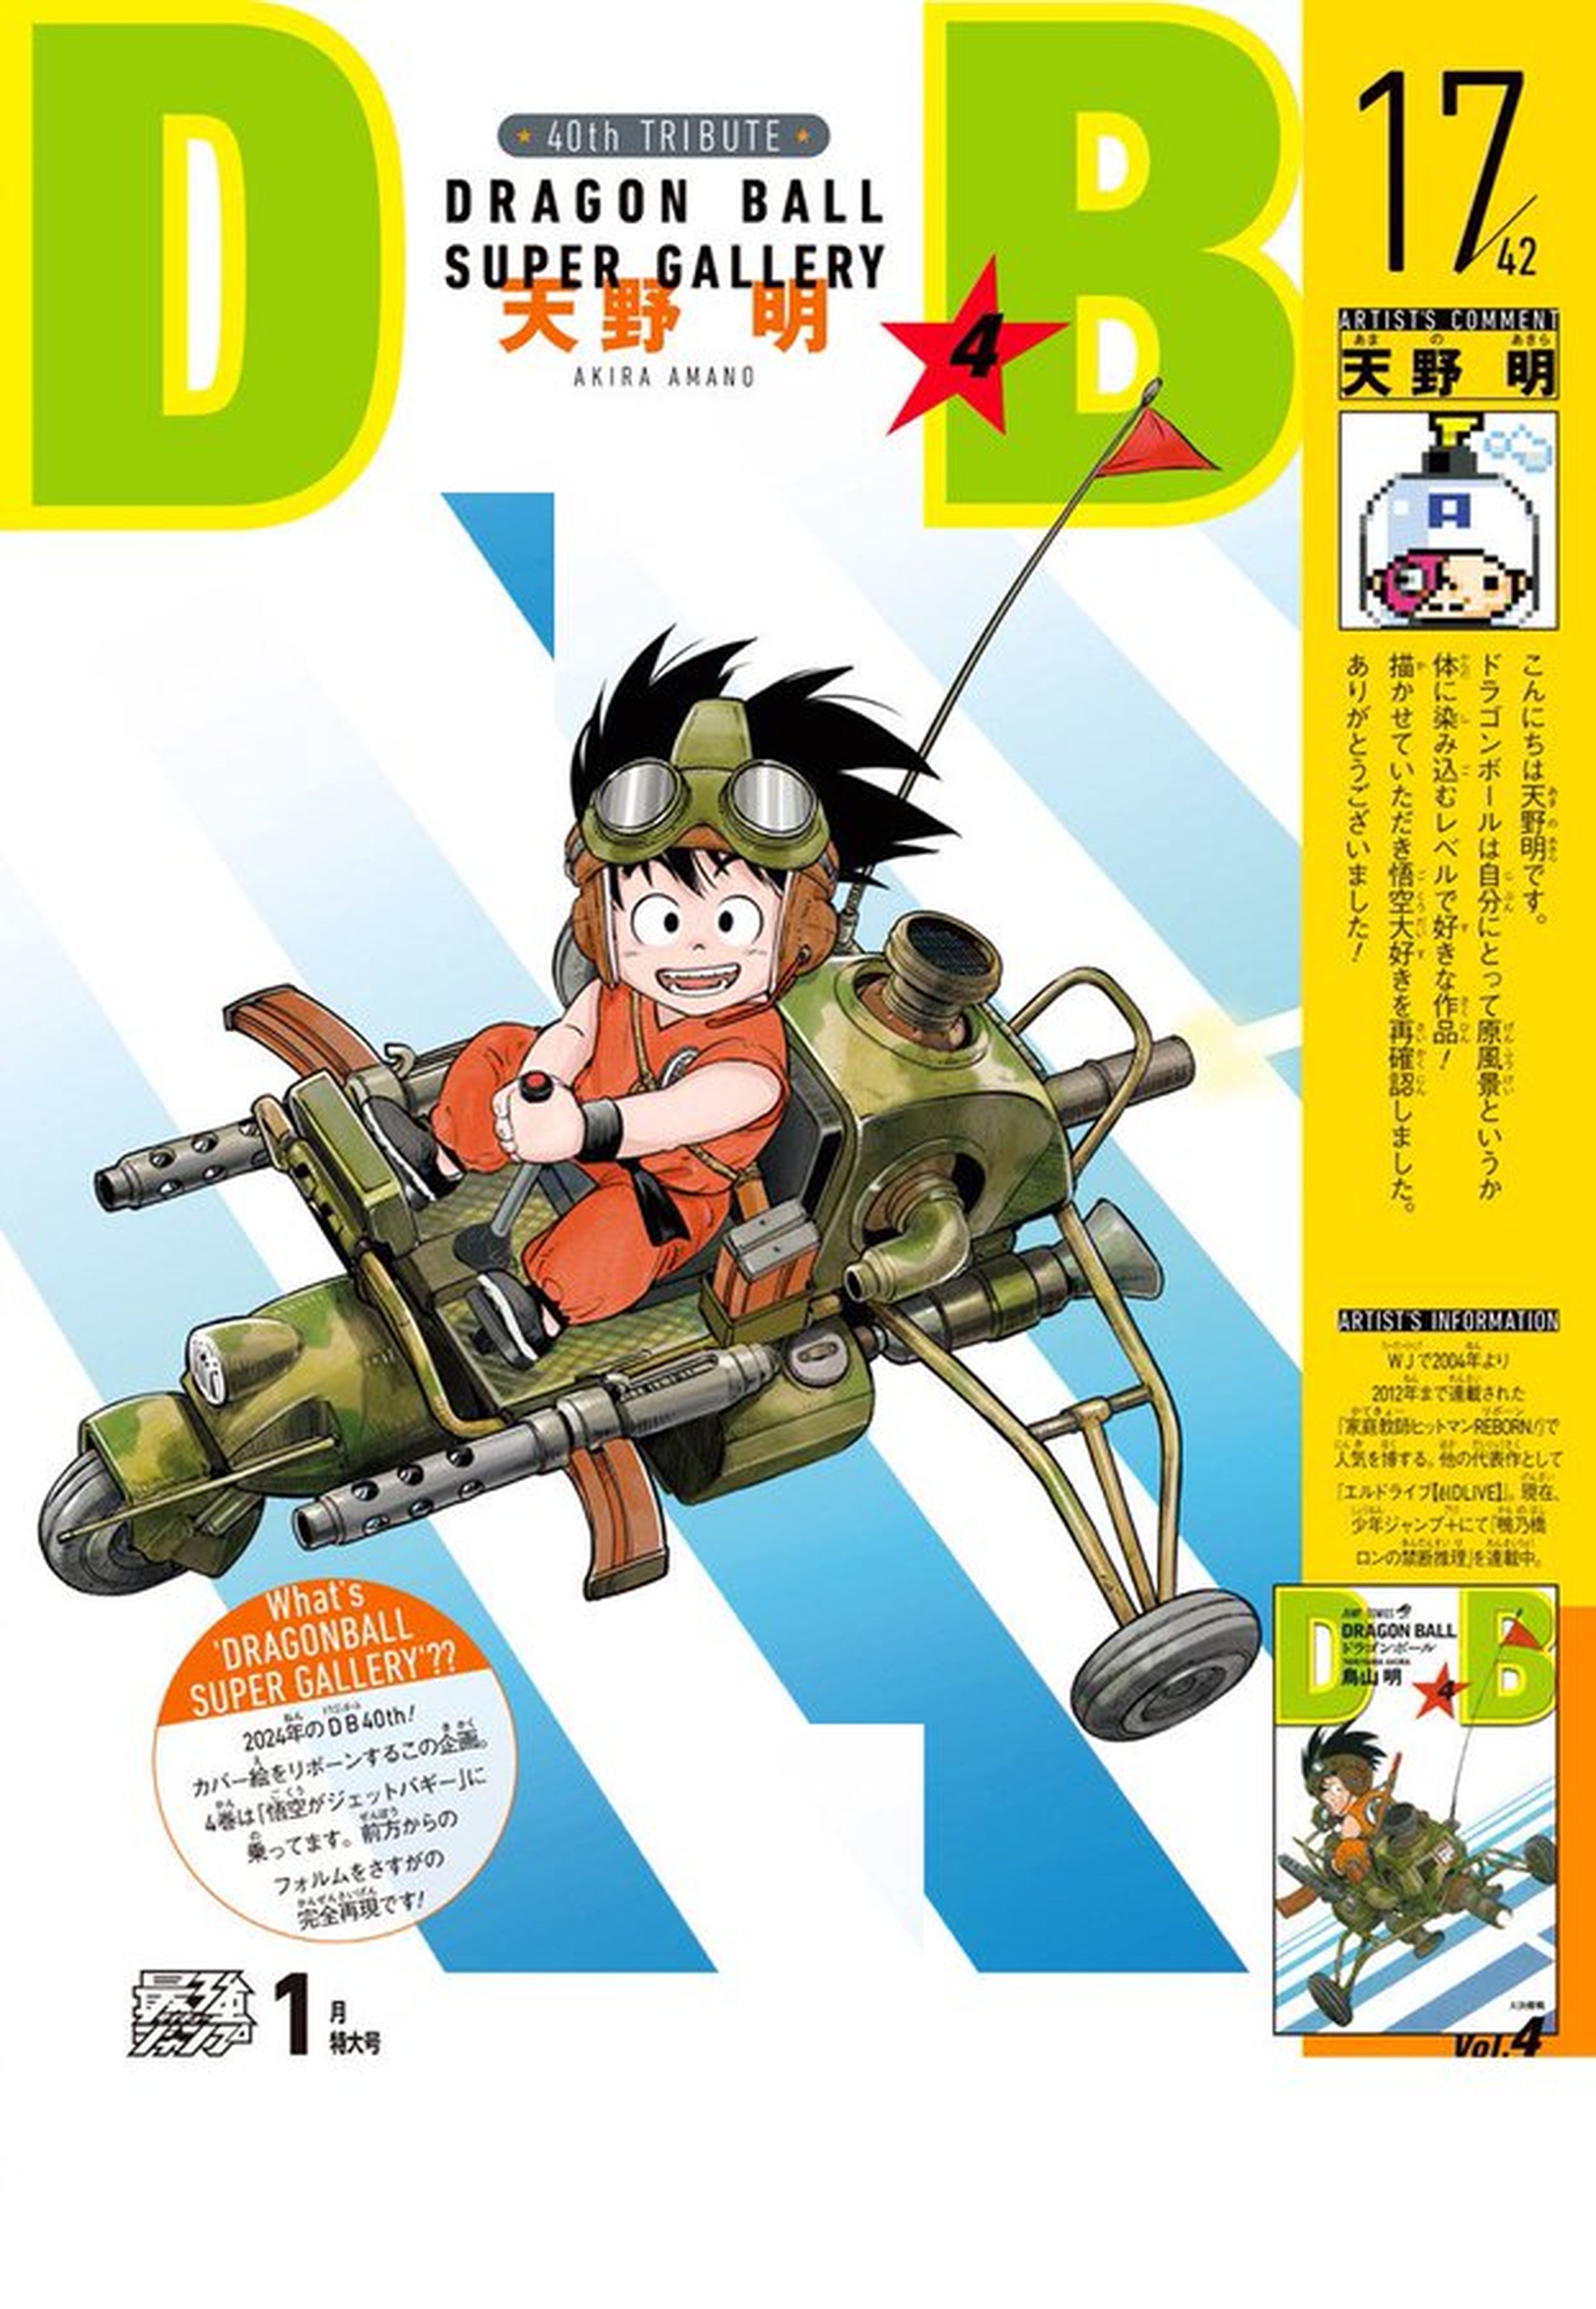 Dragon Ball - Akira Amano, autor de Reborn!, recrea fielmente una de las portadas originales de la serie manga de Akira Toriyama